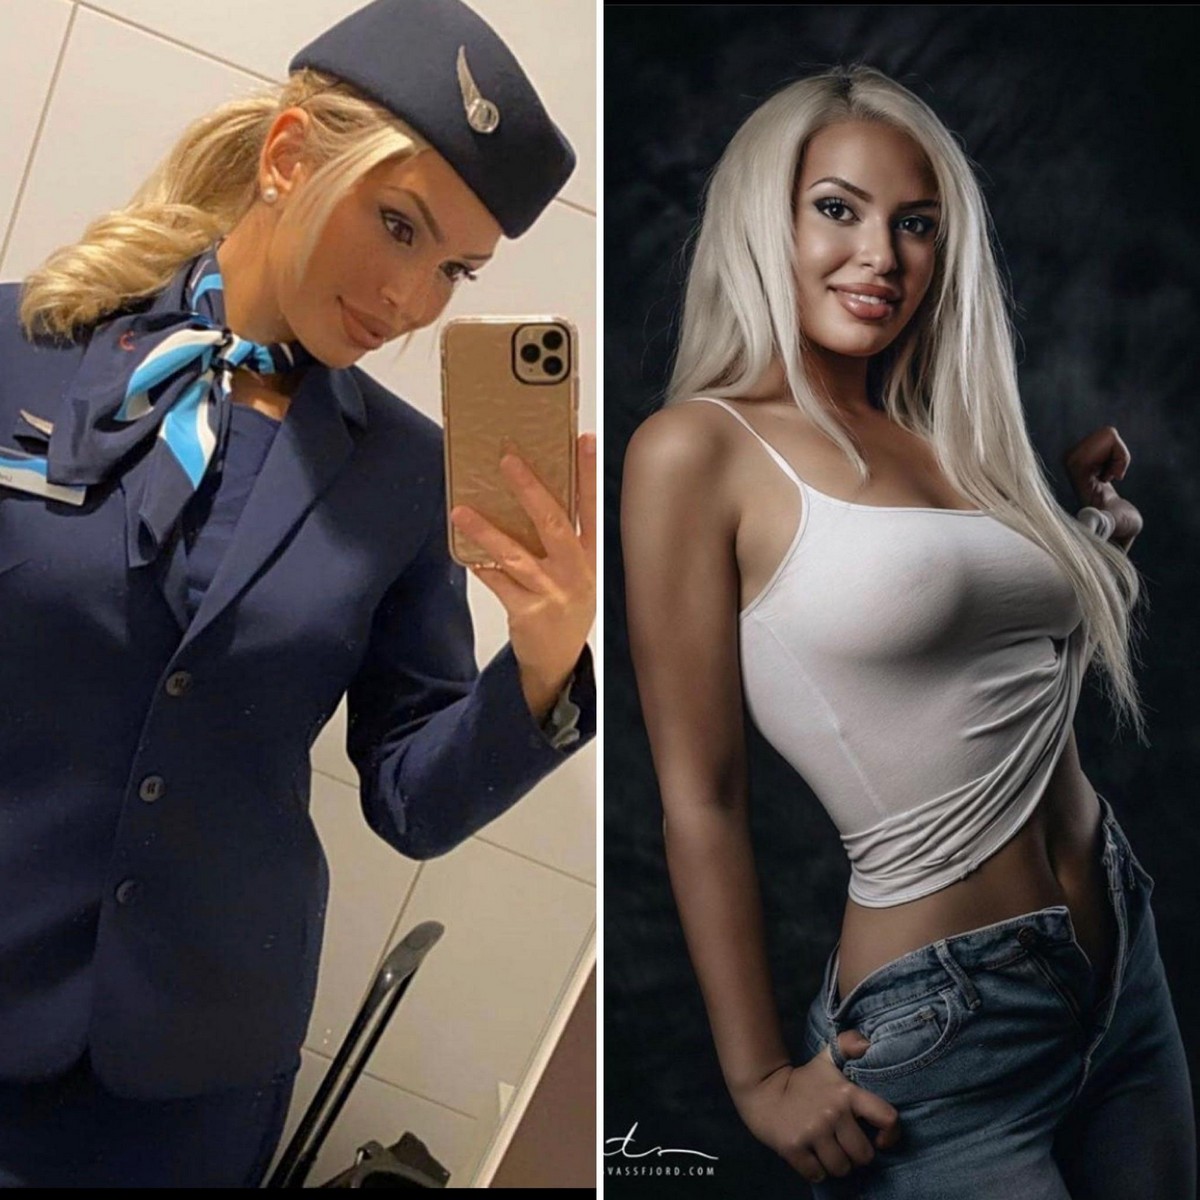 Полицейская в униформе занимается сексом с посетителем кафе